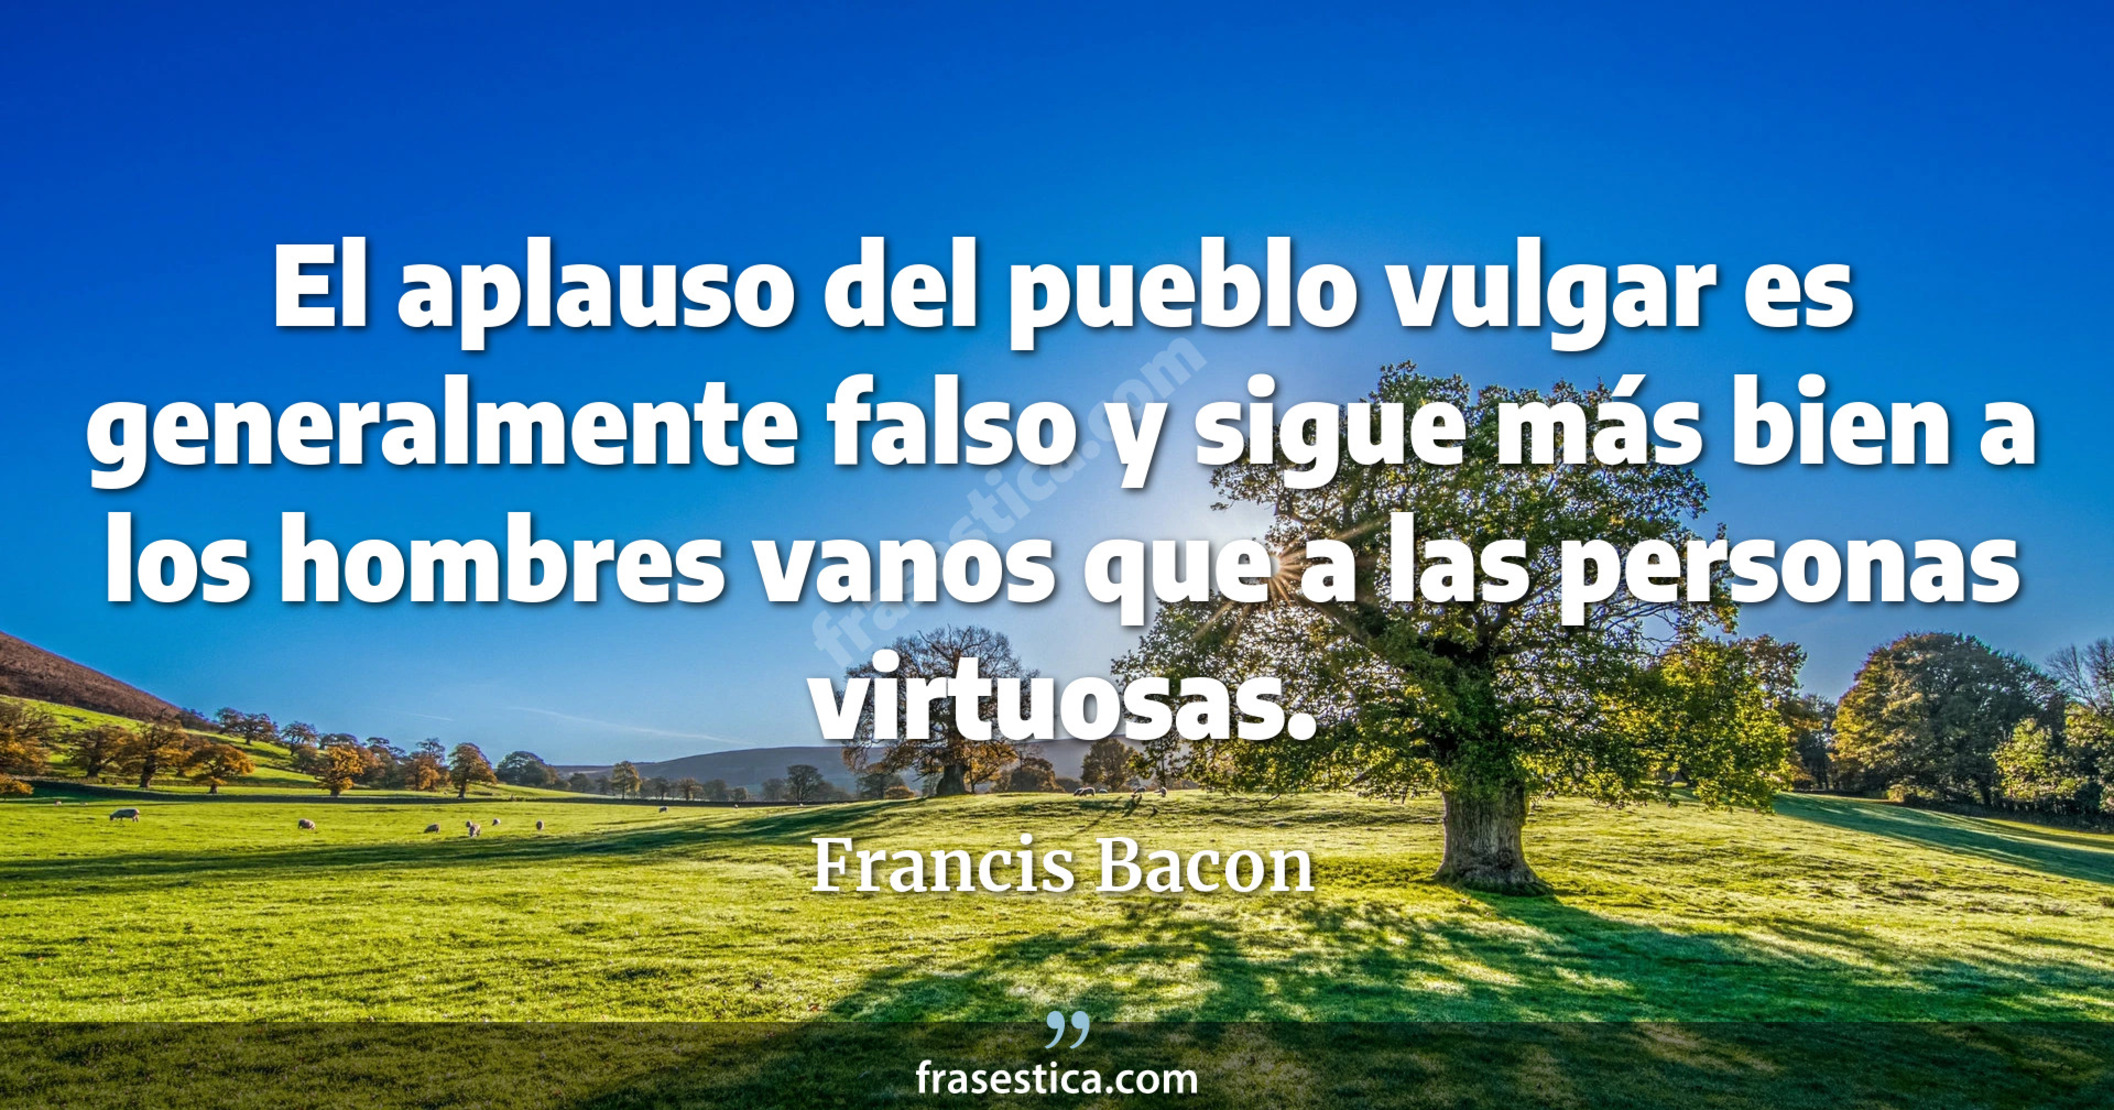 El aplauso del pueblo vulgar es generalmente falso y sigue más bien a los hombres vanos que a las personas virtuosas. - Francis Bacon